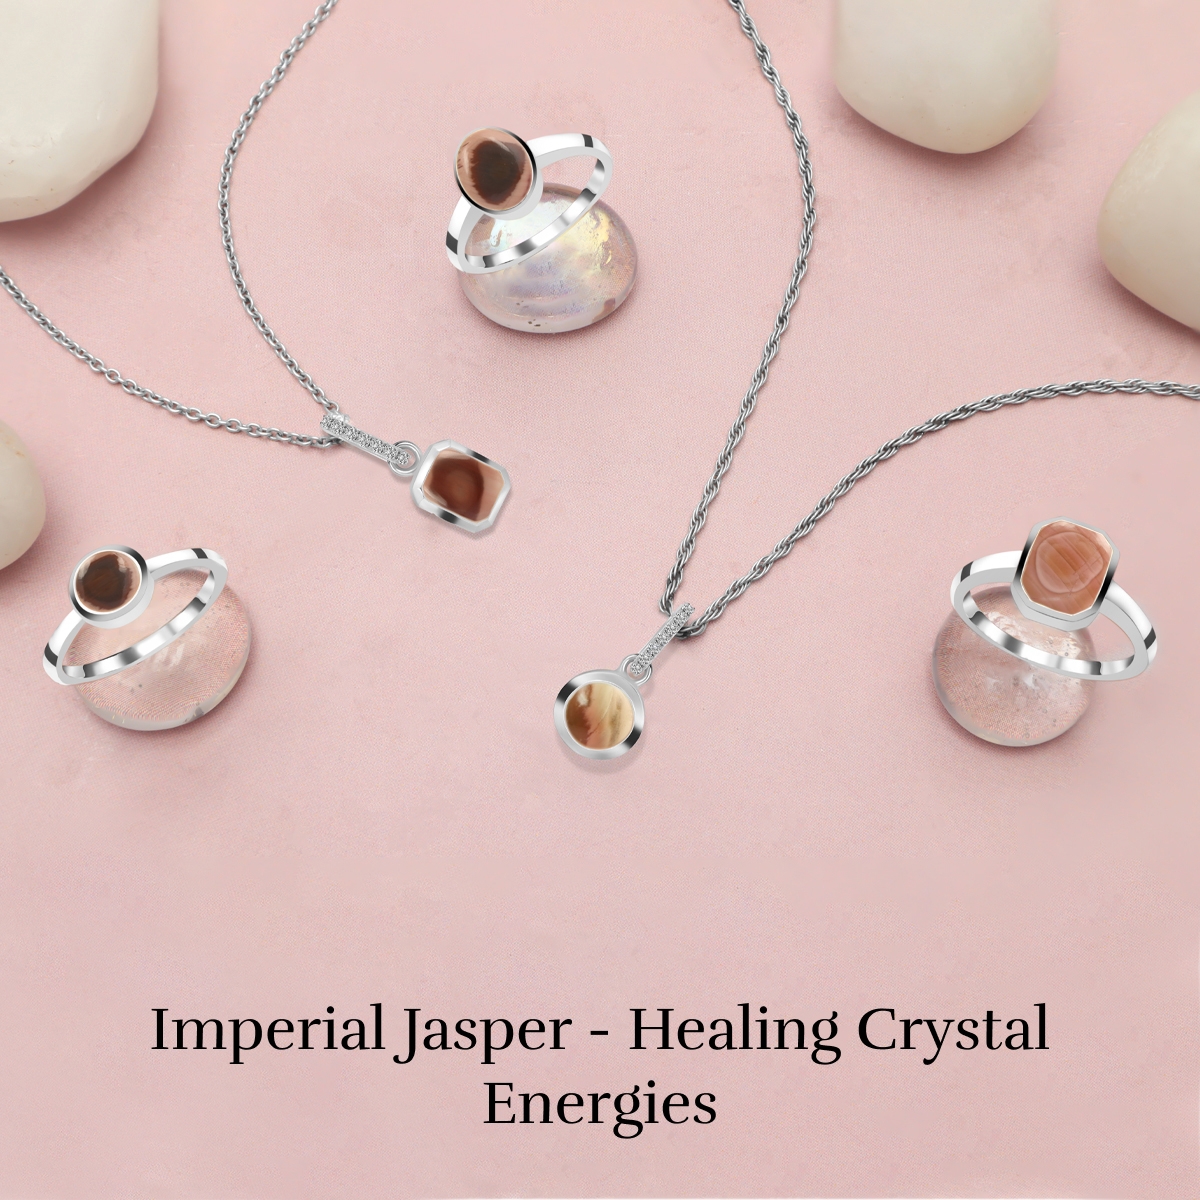 Healing Properties of Imperial Jasper Gemstone